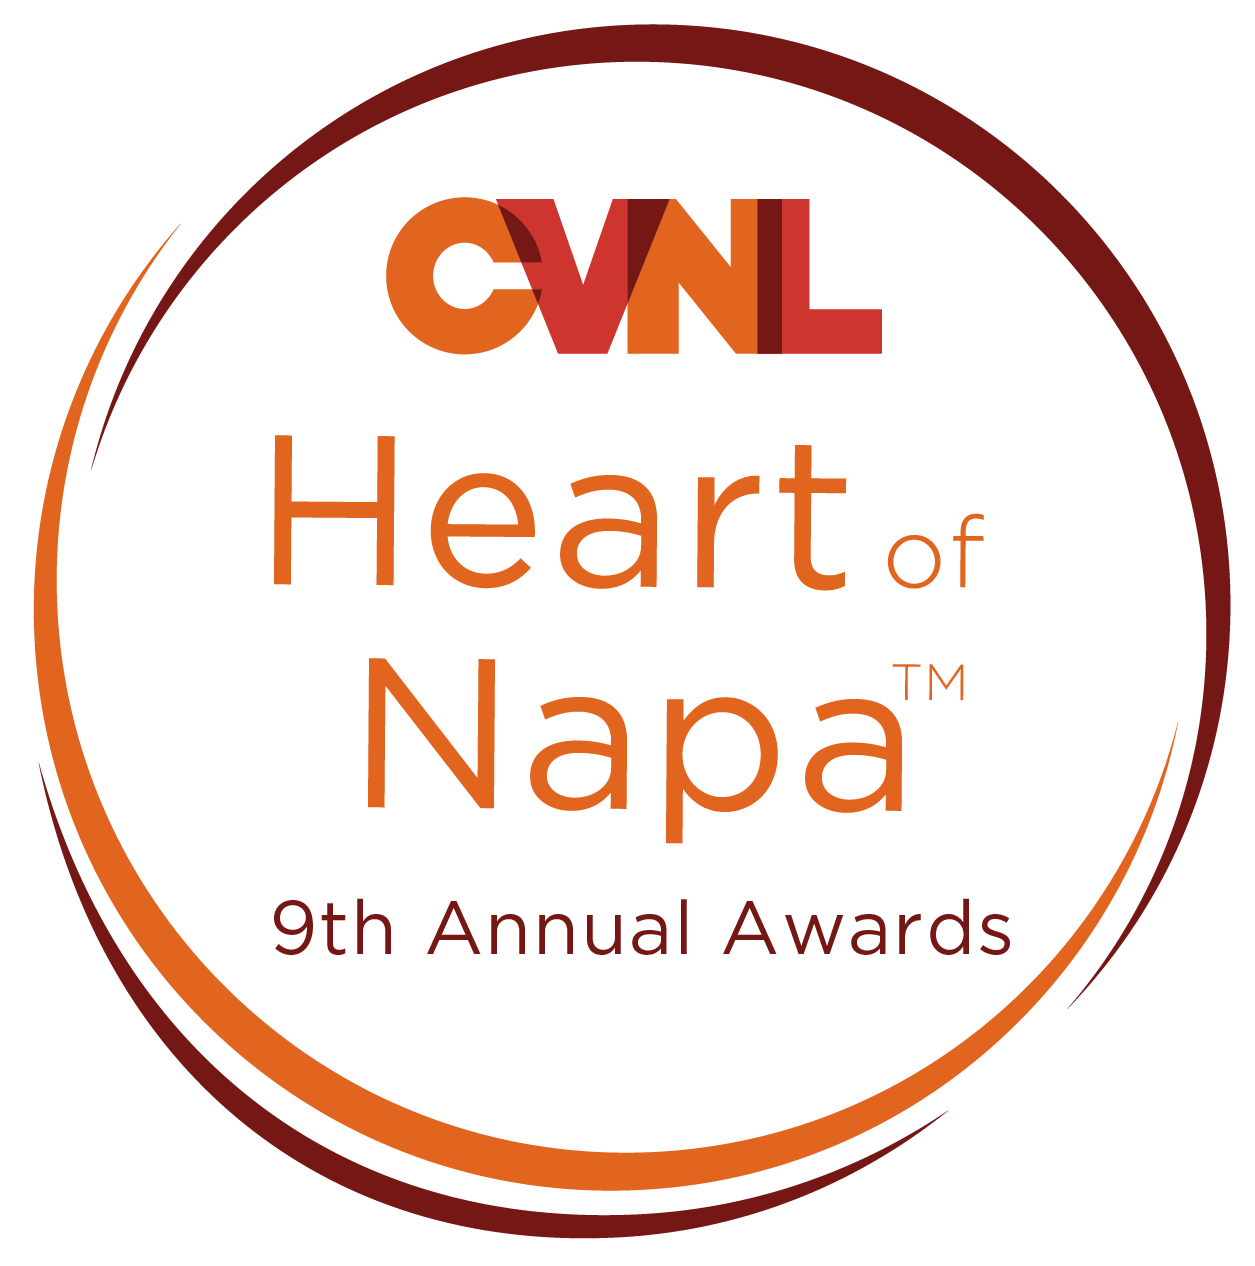 9th Annual Heart of Napa Awards